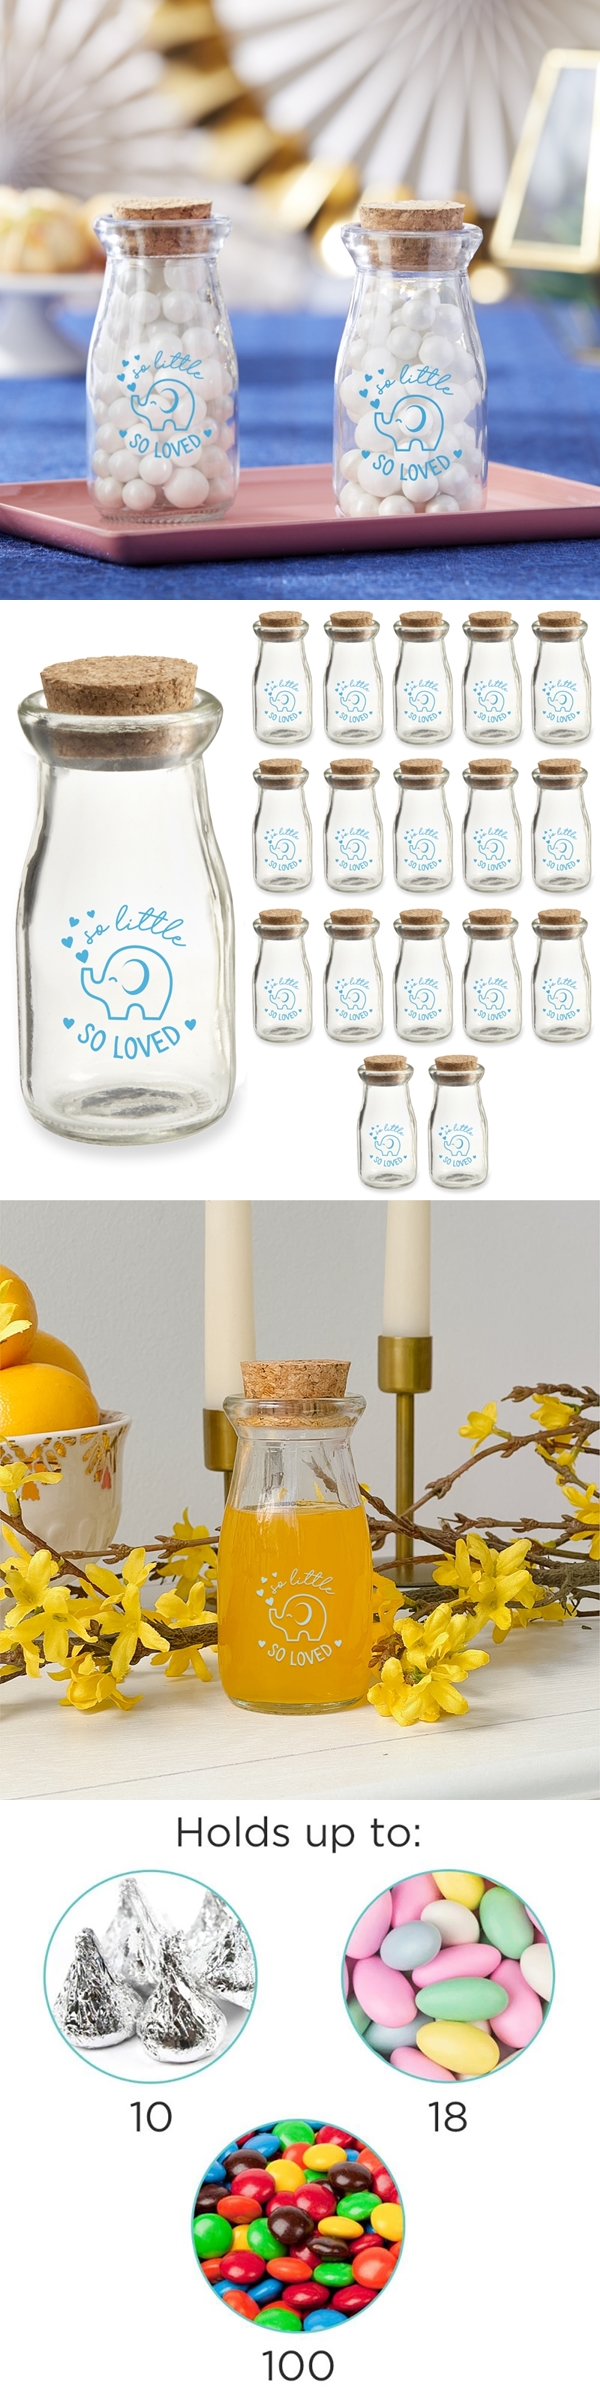 Vintage Milk Bottle Jars with Cute Blue Elephant Design (Set of 18)